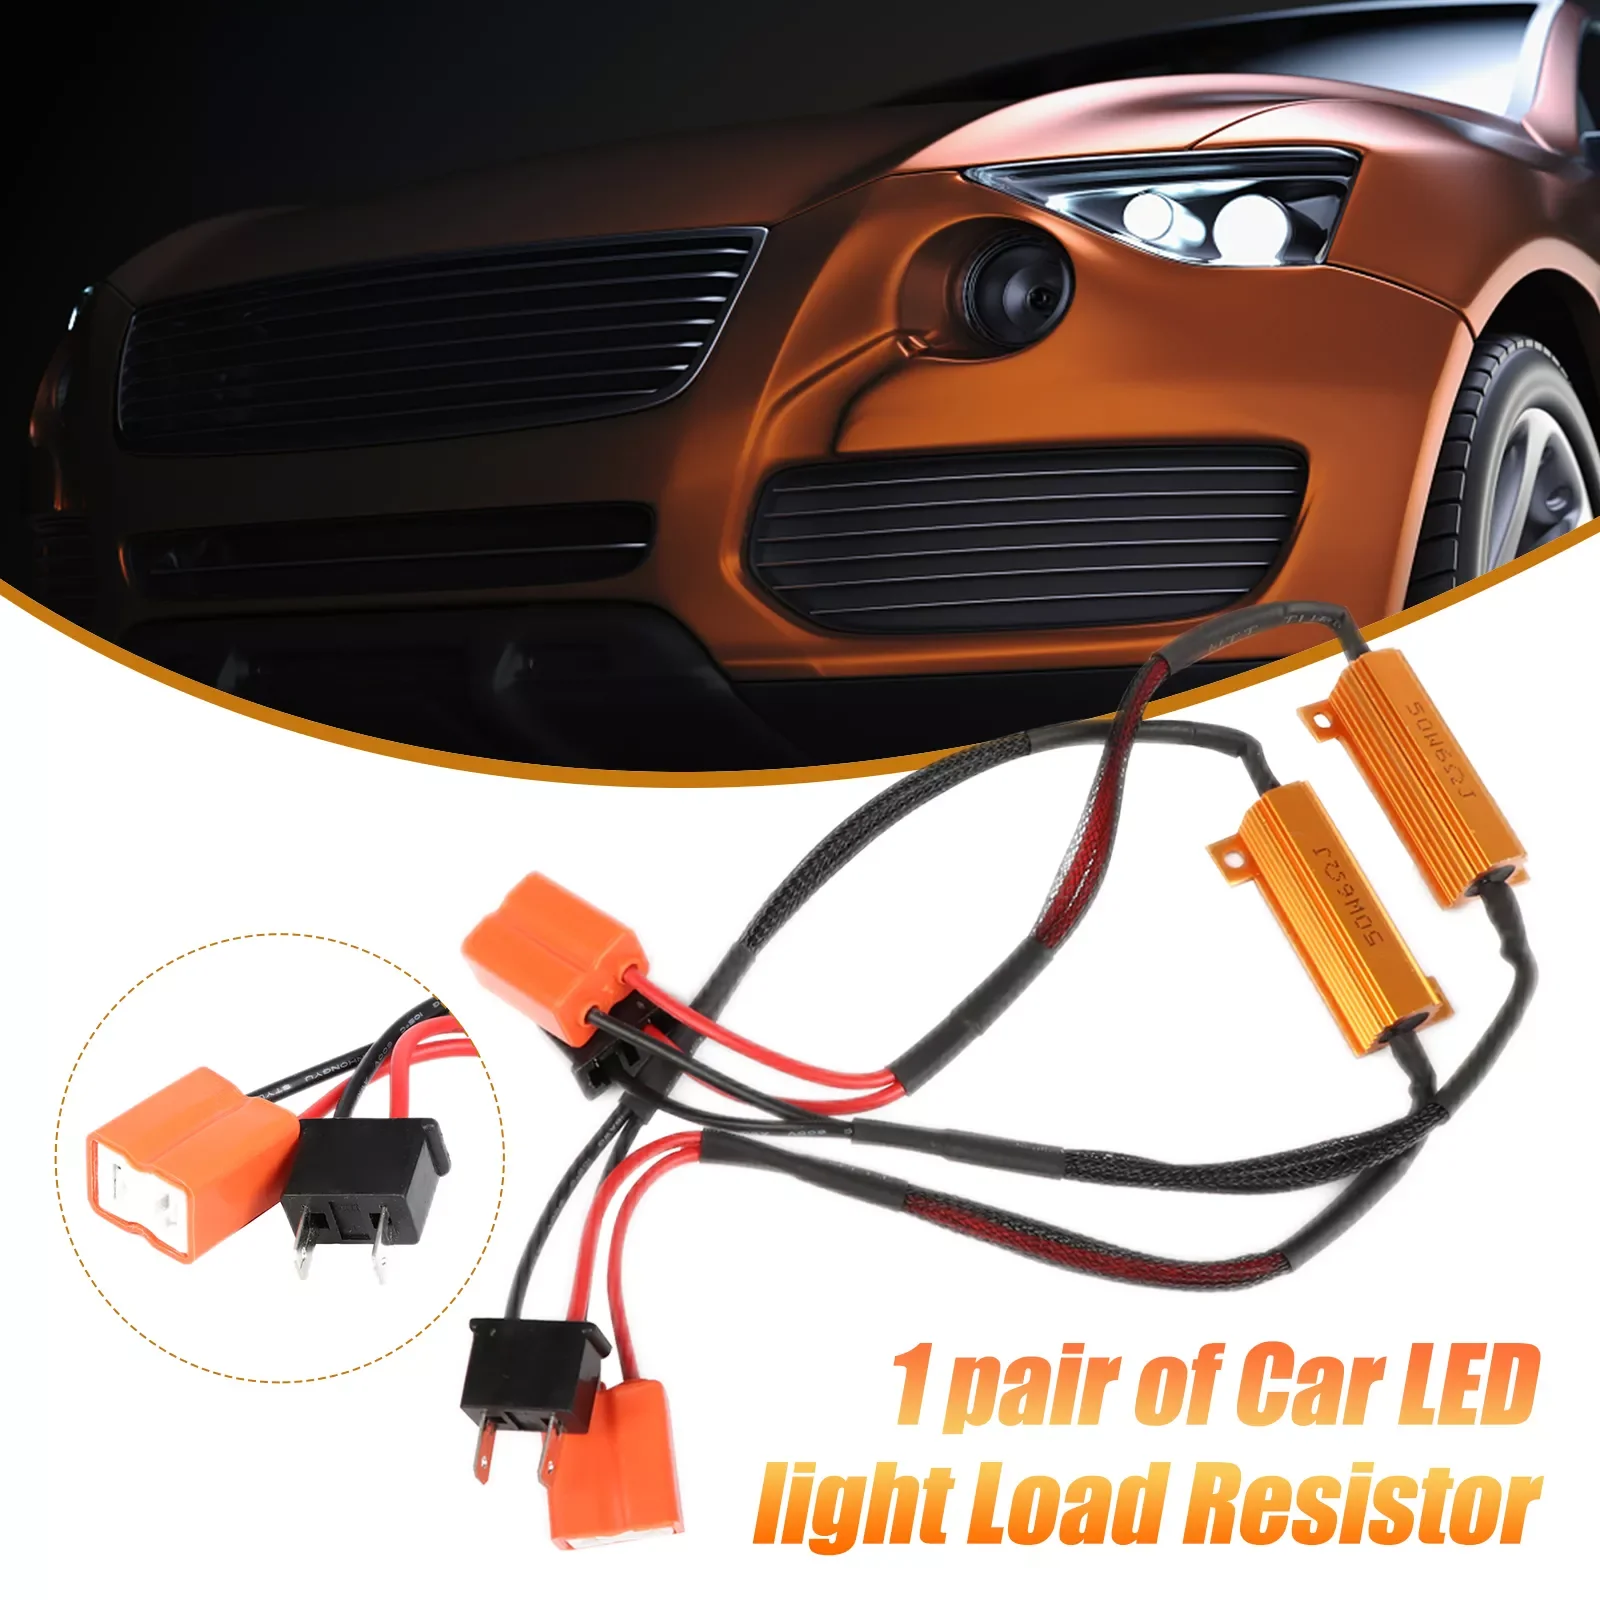 

2pcs H7 50W 6Ω Car LED Canbus Load Resistor Controller Warning Canceler LED Decoder Light Error Free 12V-24V Resistance